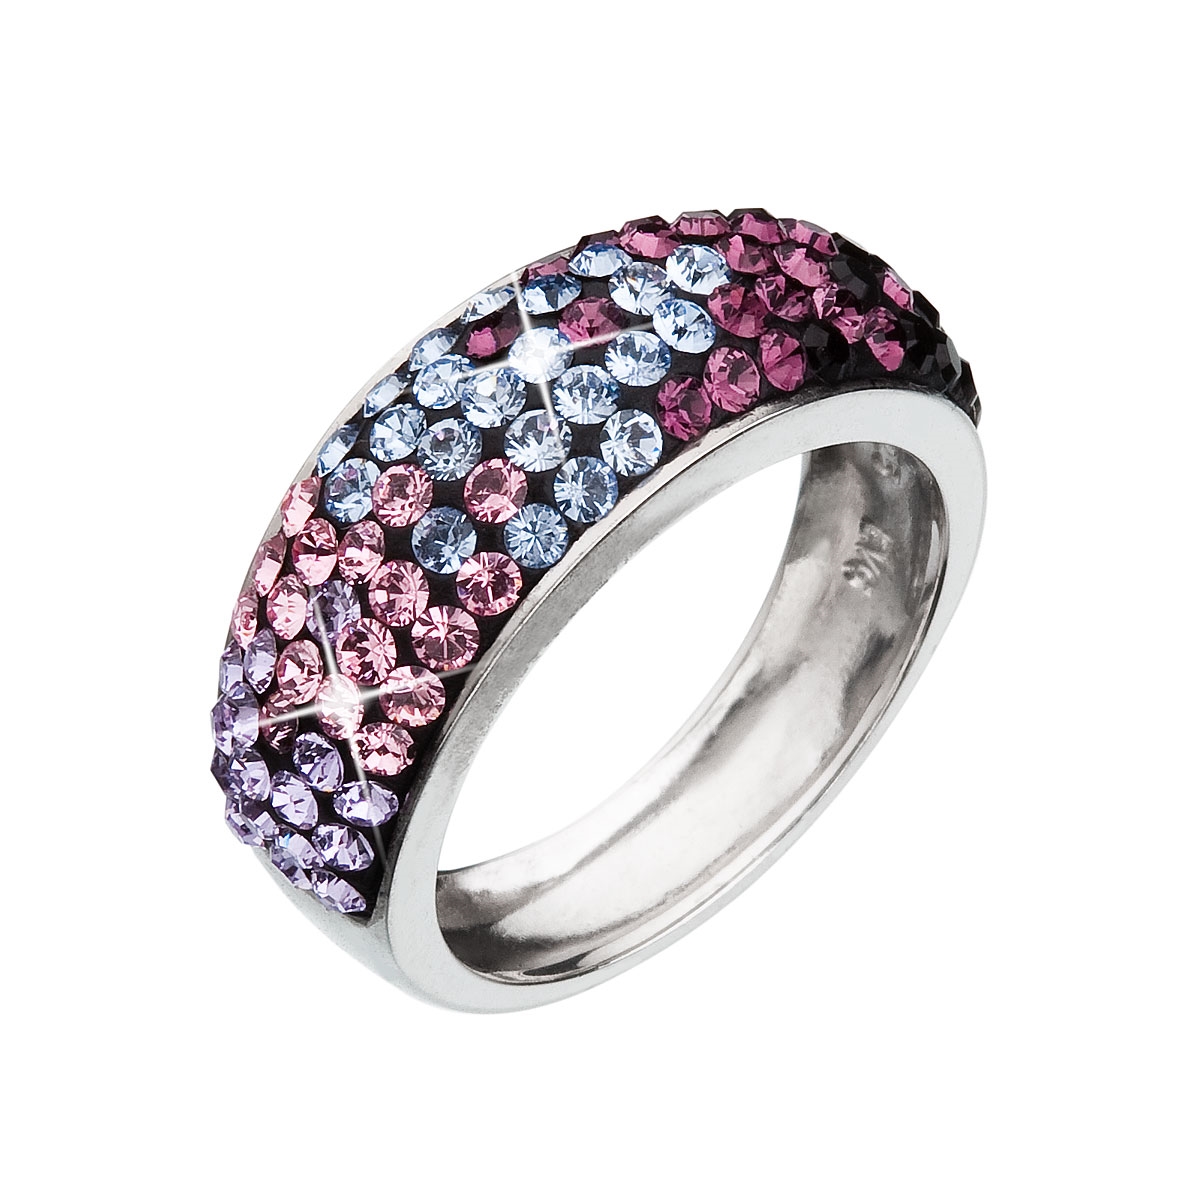 Strieborný prsteň s kryštálmi Crystals from Swarovski ®, Magic Violet